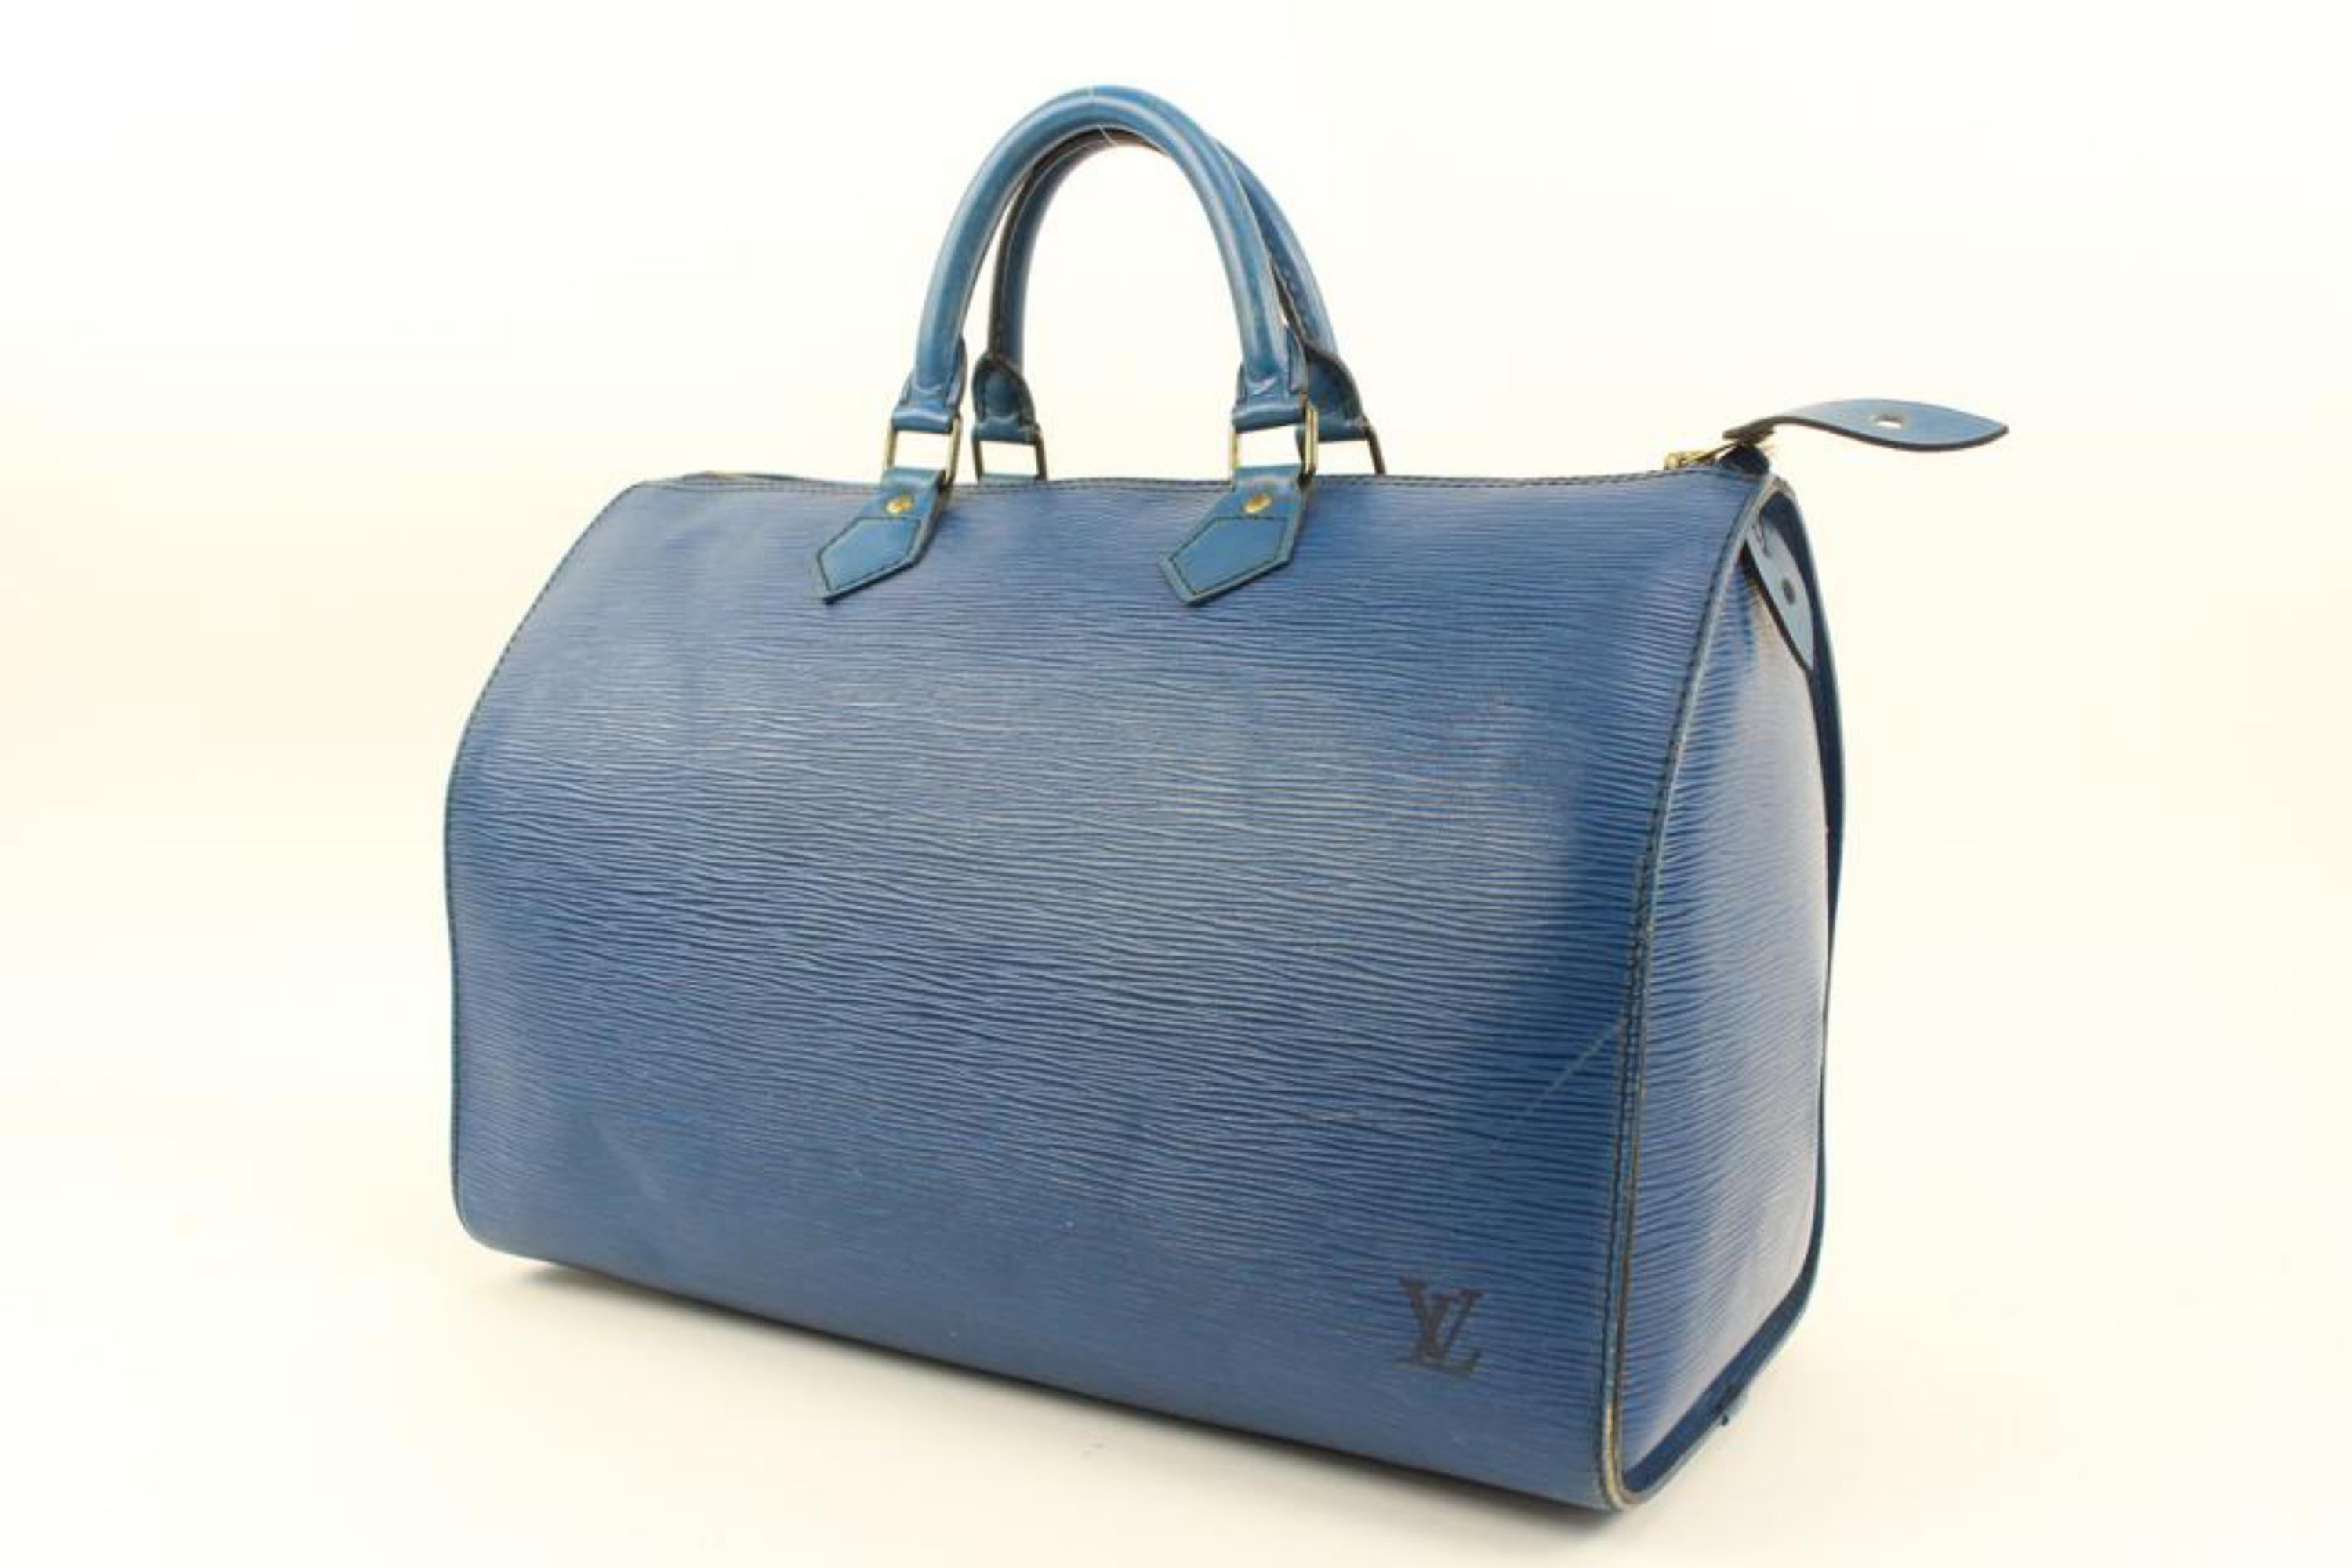 Louis Vuitton Blue Epi Leather Speedy 35 Boston Bag 86lv221s